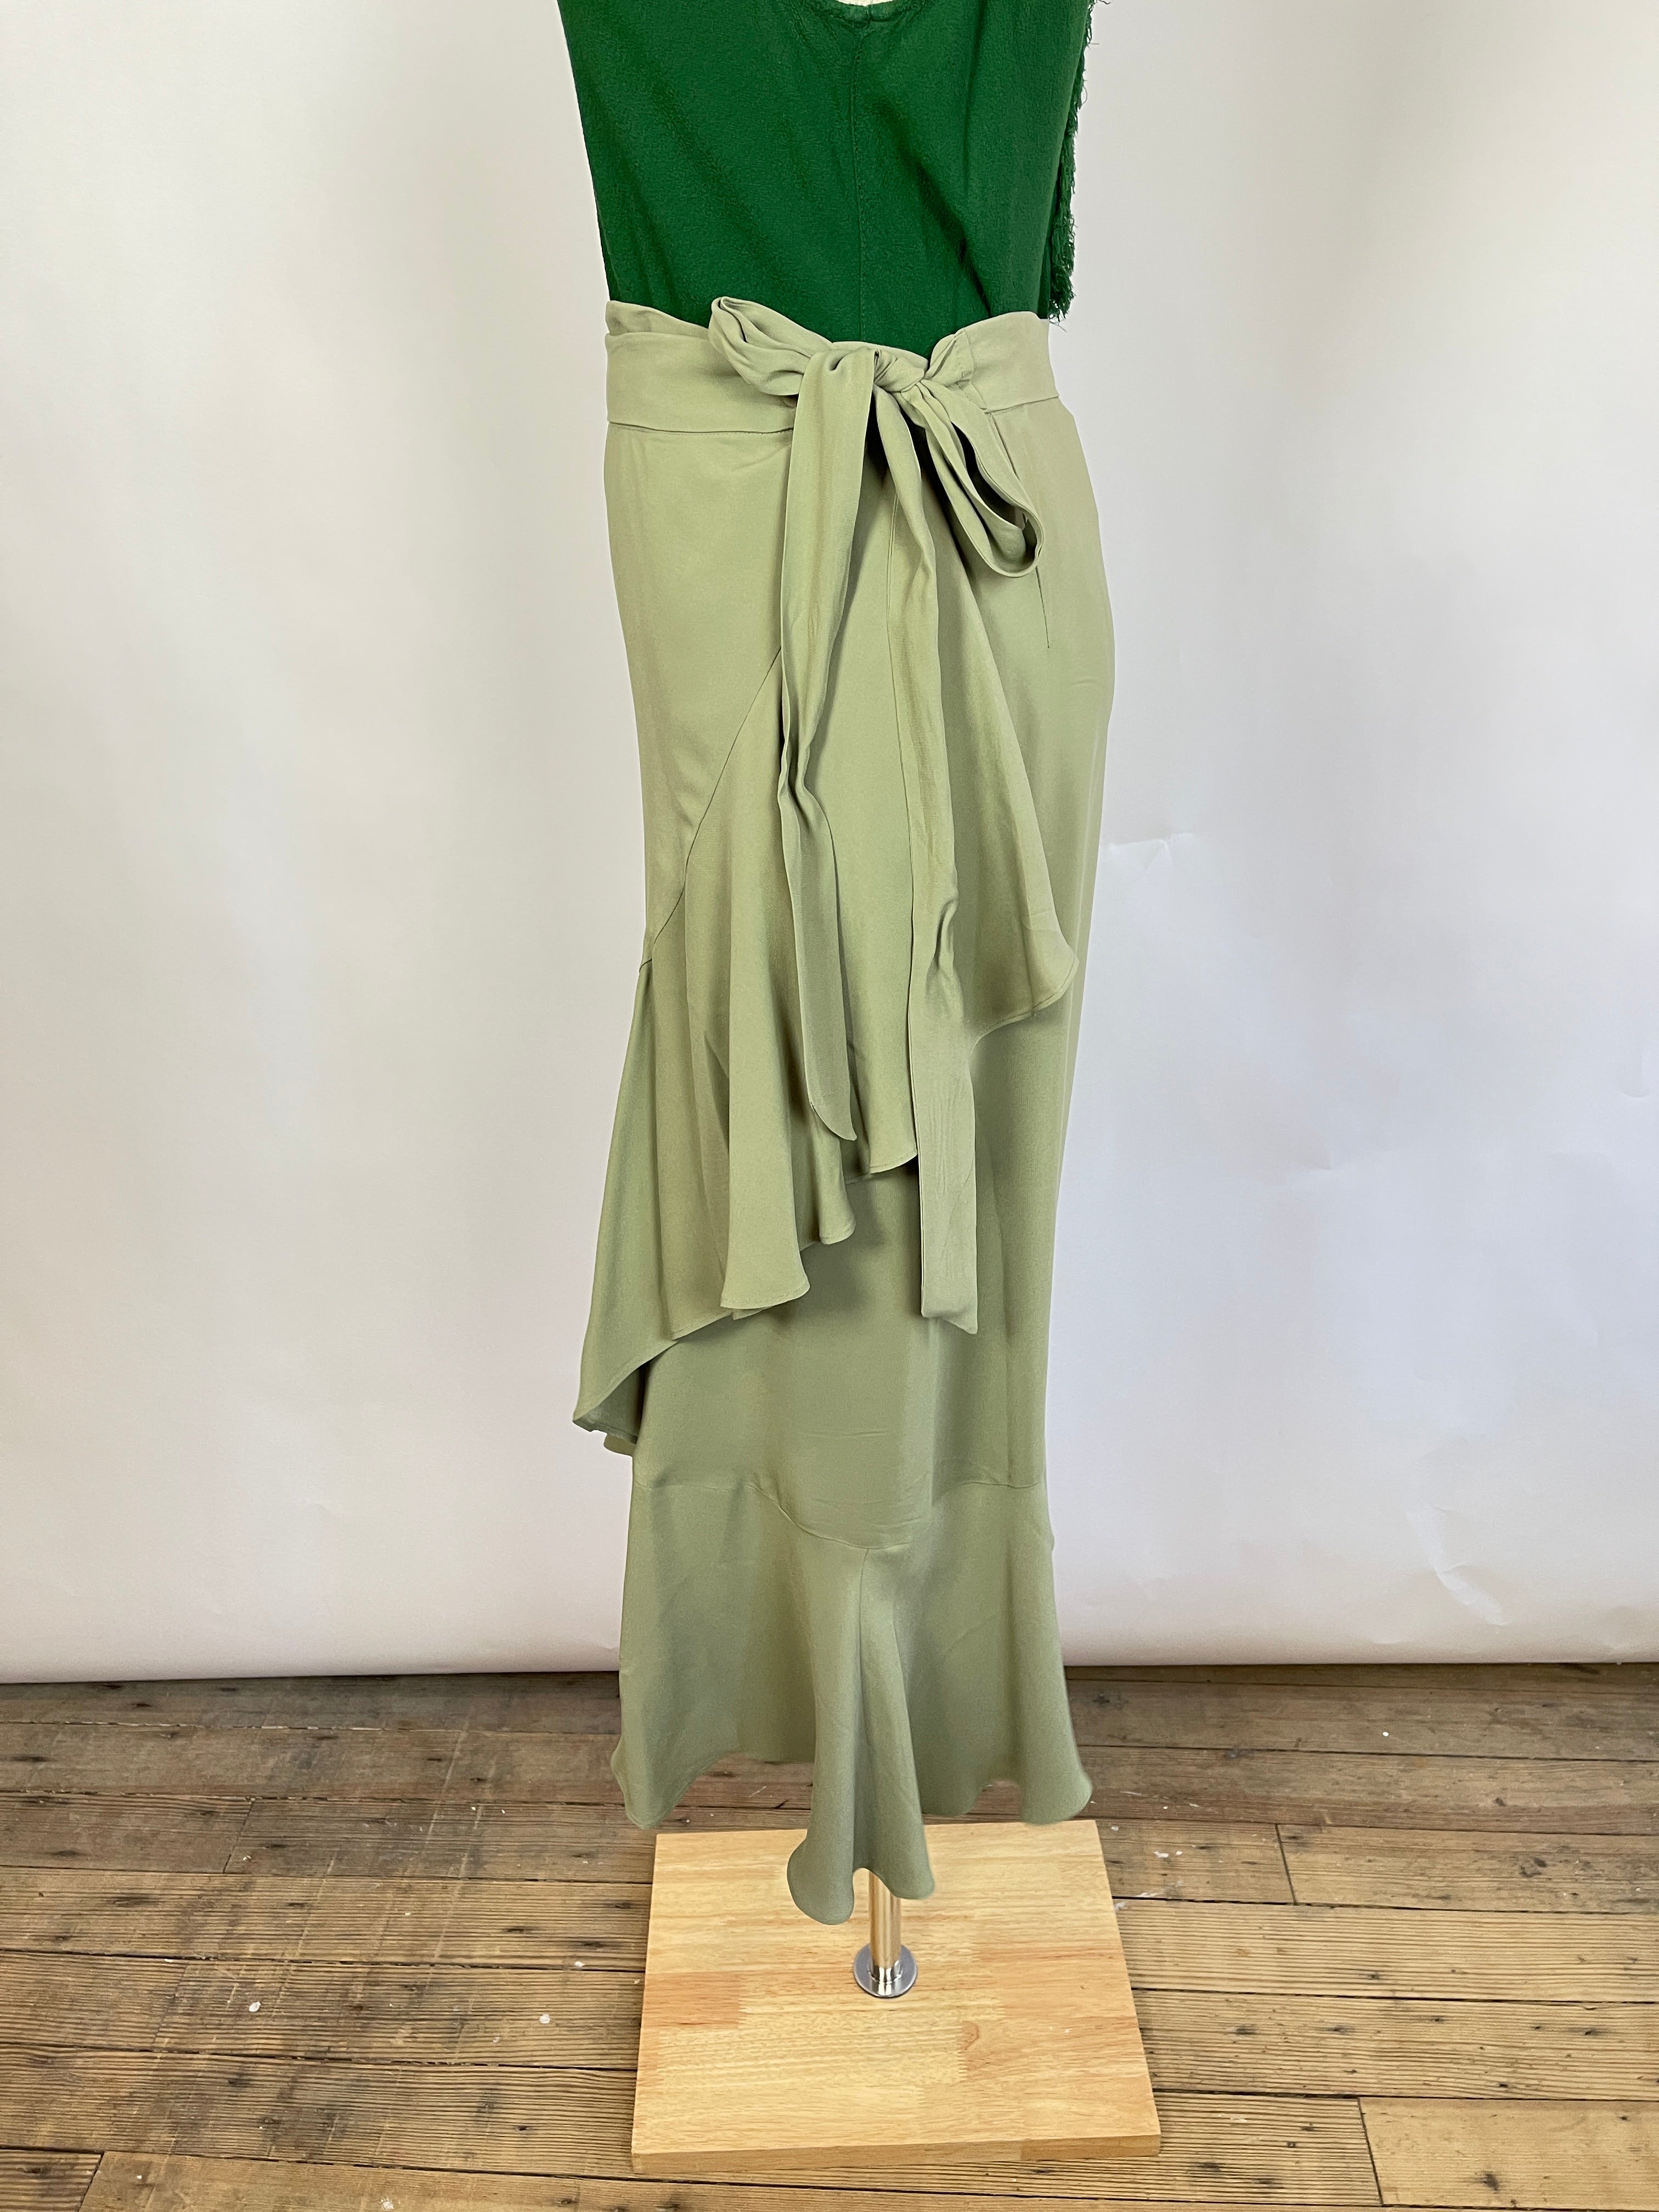 Rodebjer Green Wrap Skirt (M)